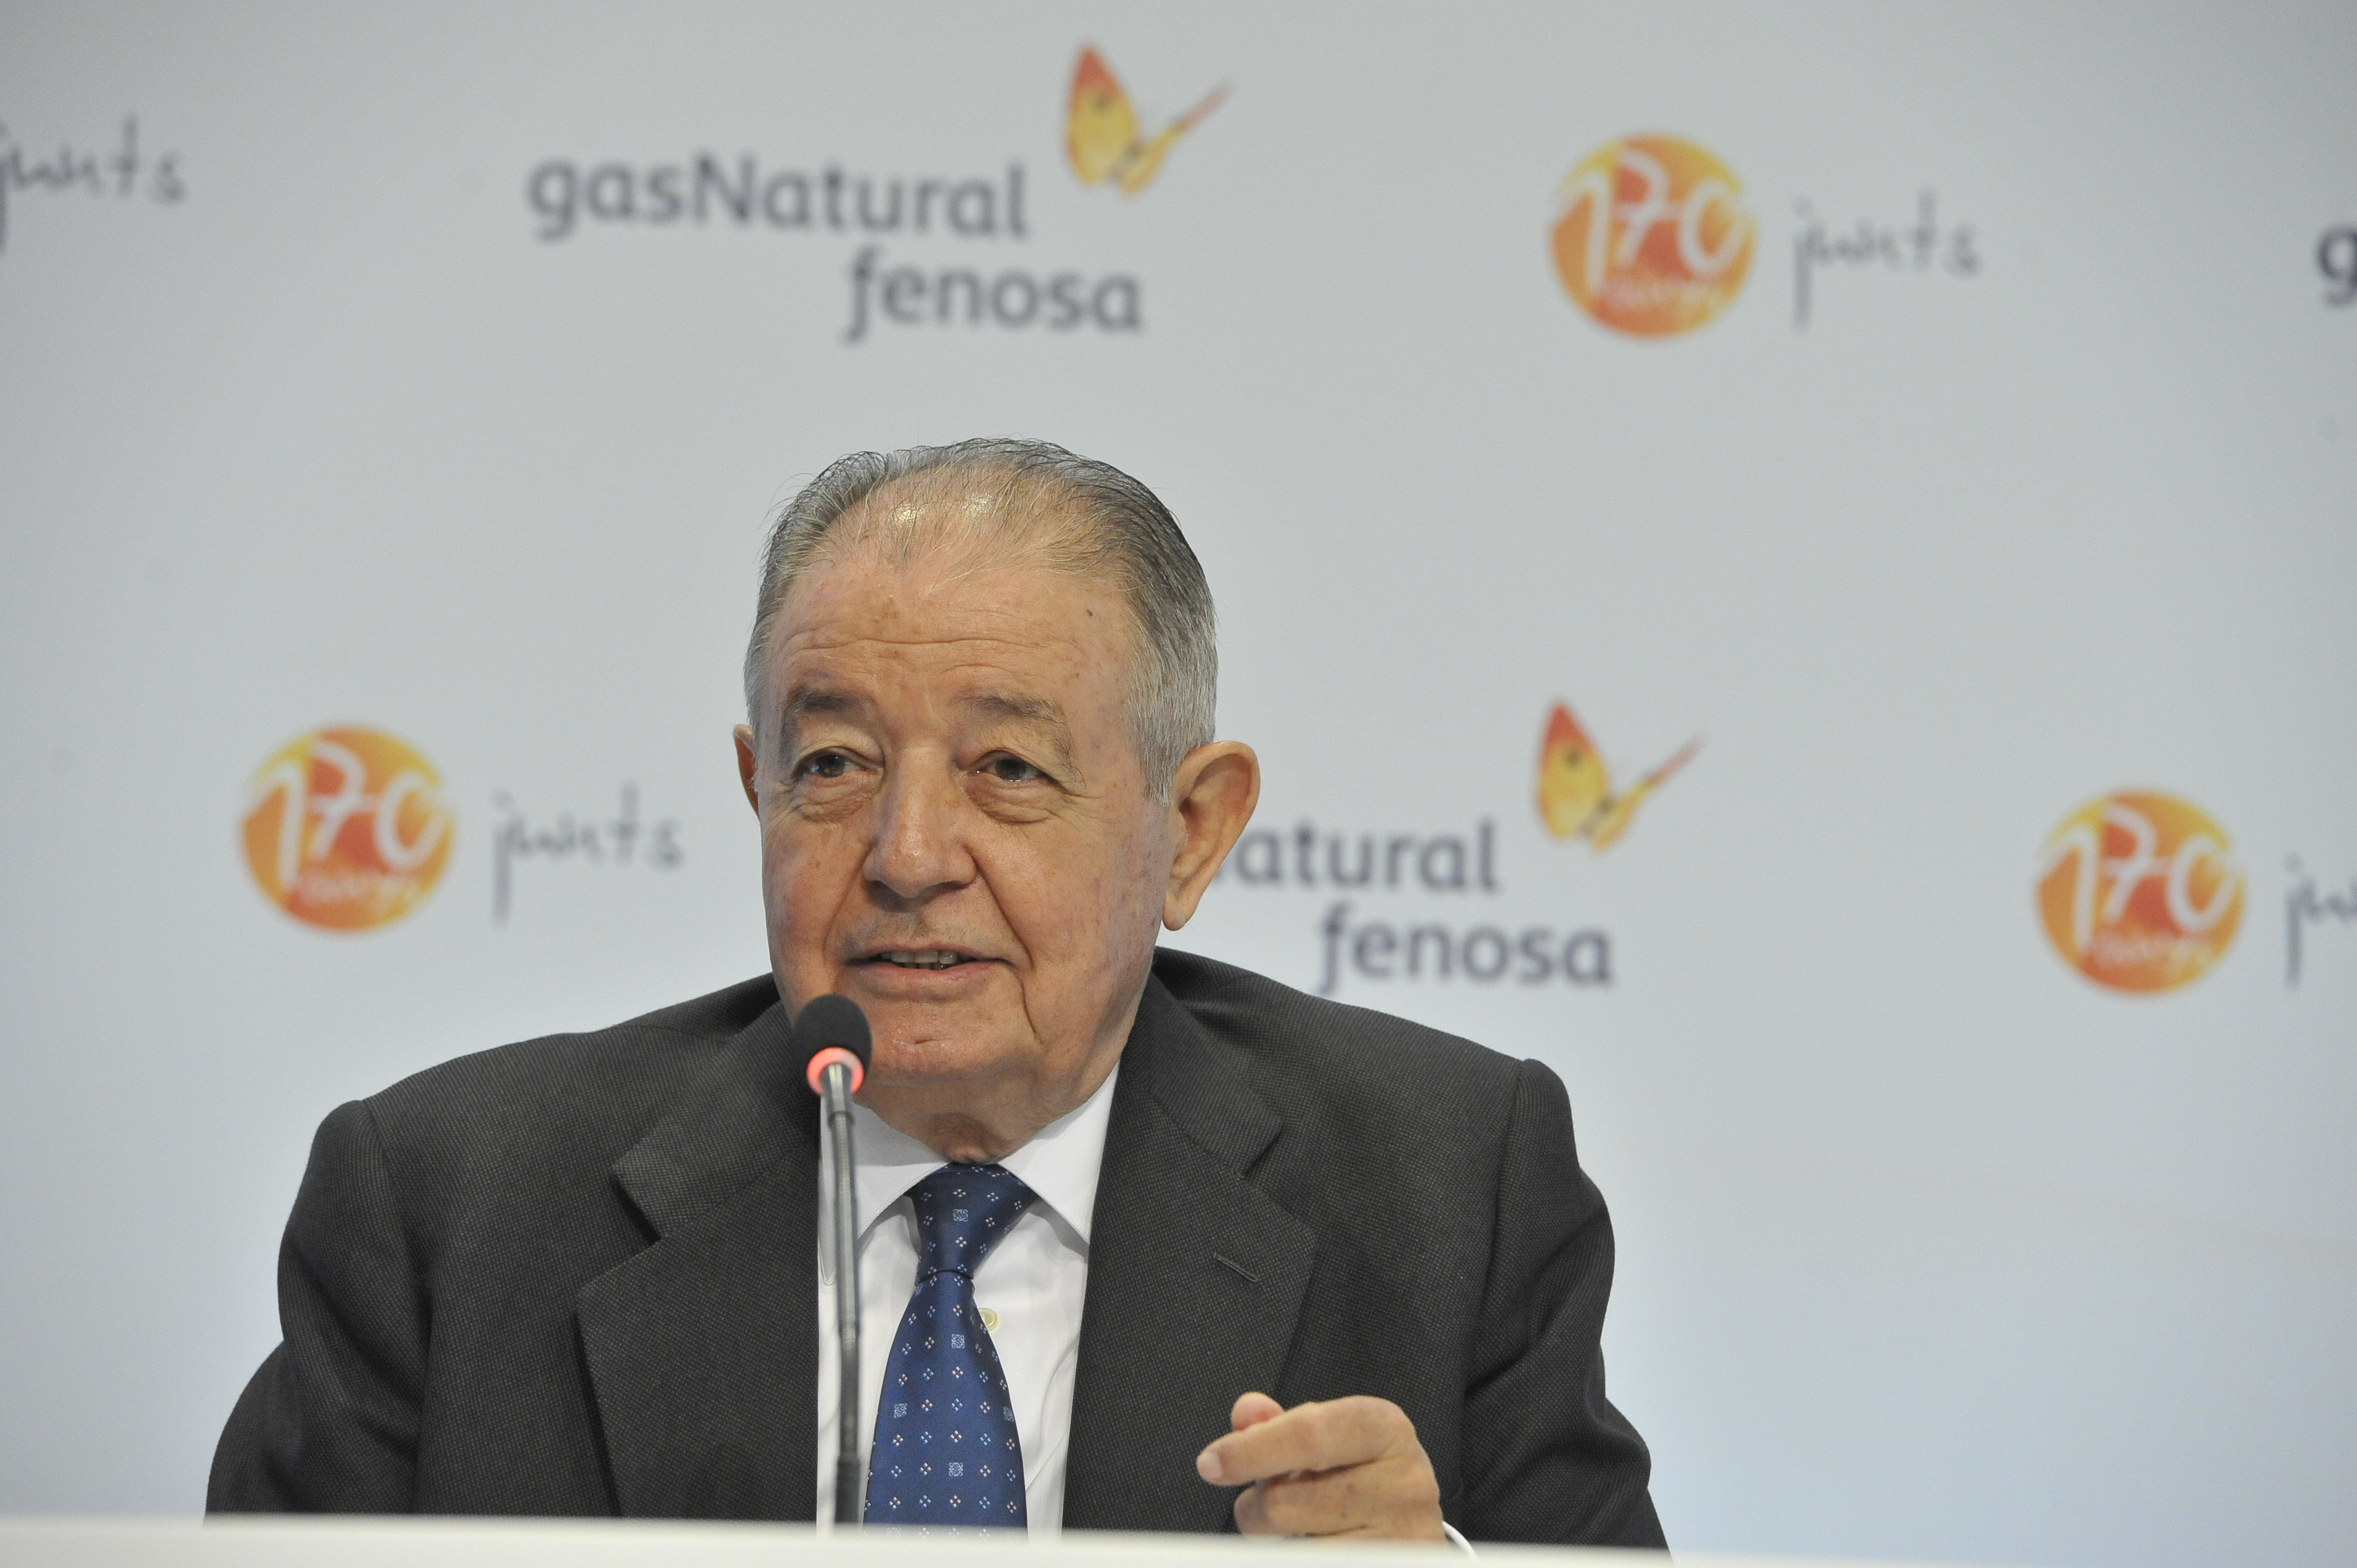 El presidente de honor de Gas Natural Fenosa, Salvador Gabarró en una rueda de prensa. FOTO: Gas Natural Fenosa.